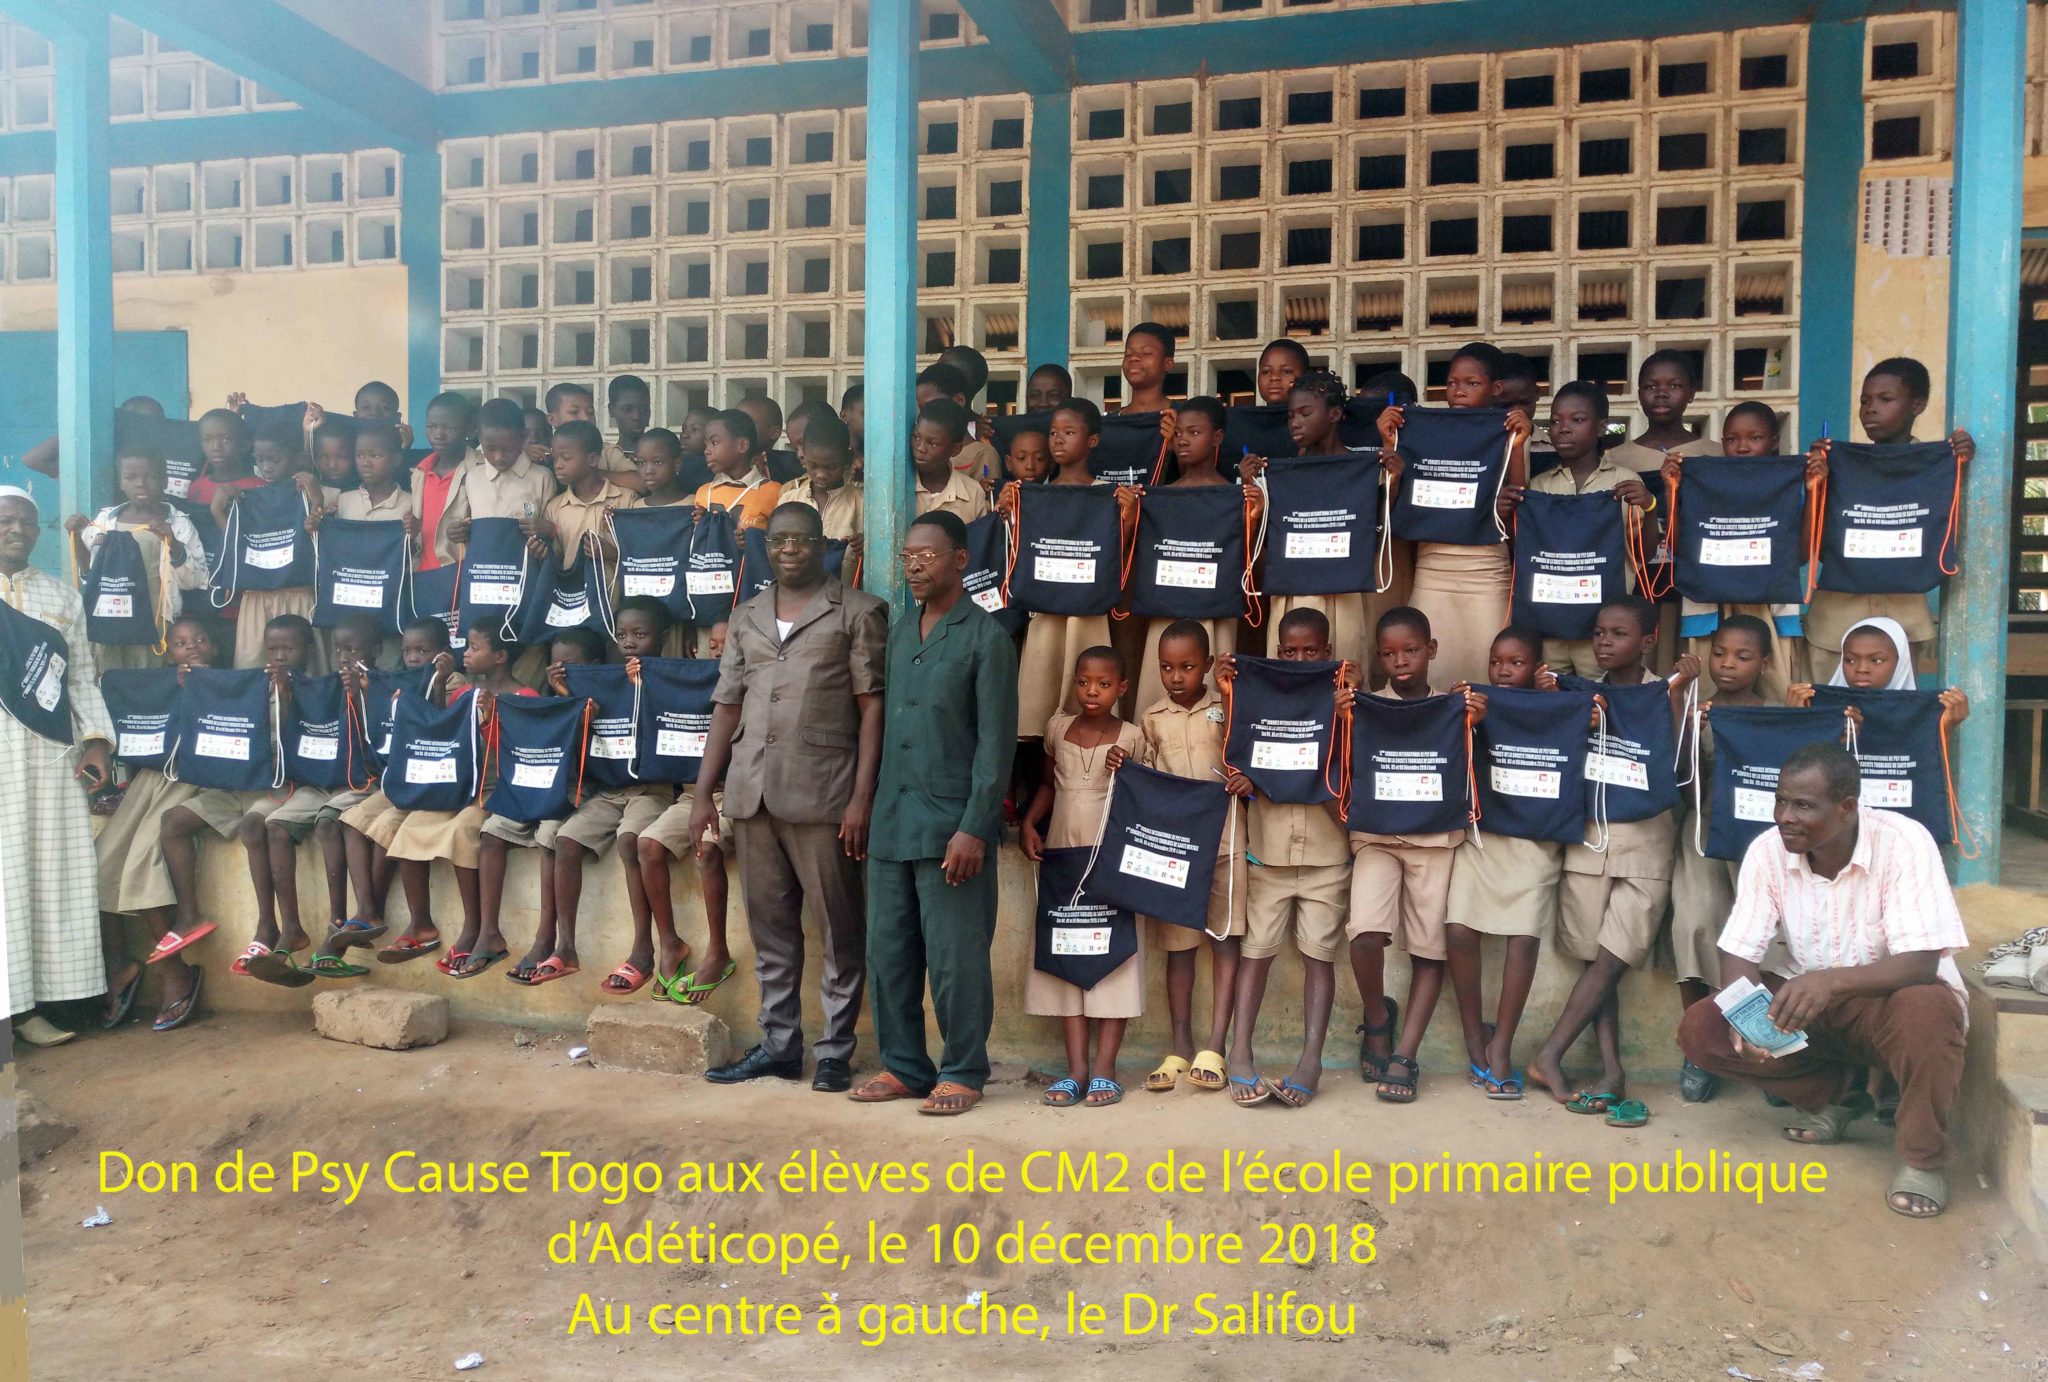 Action de Psy Cause Togo en faveur d’une école après le congrès (10 décembre 2018)